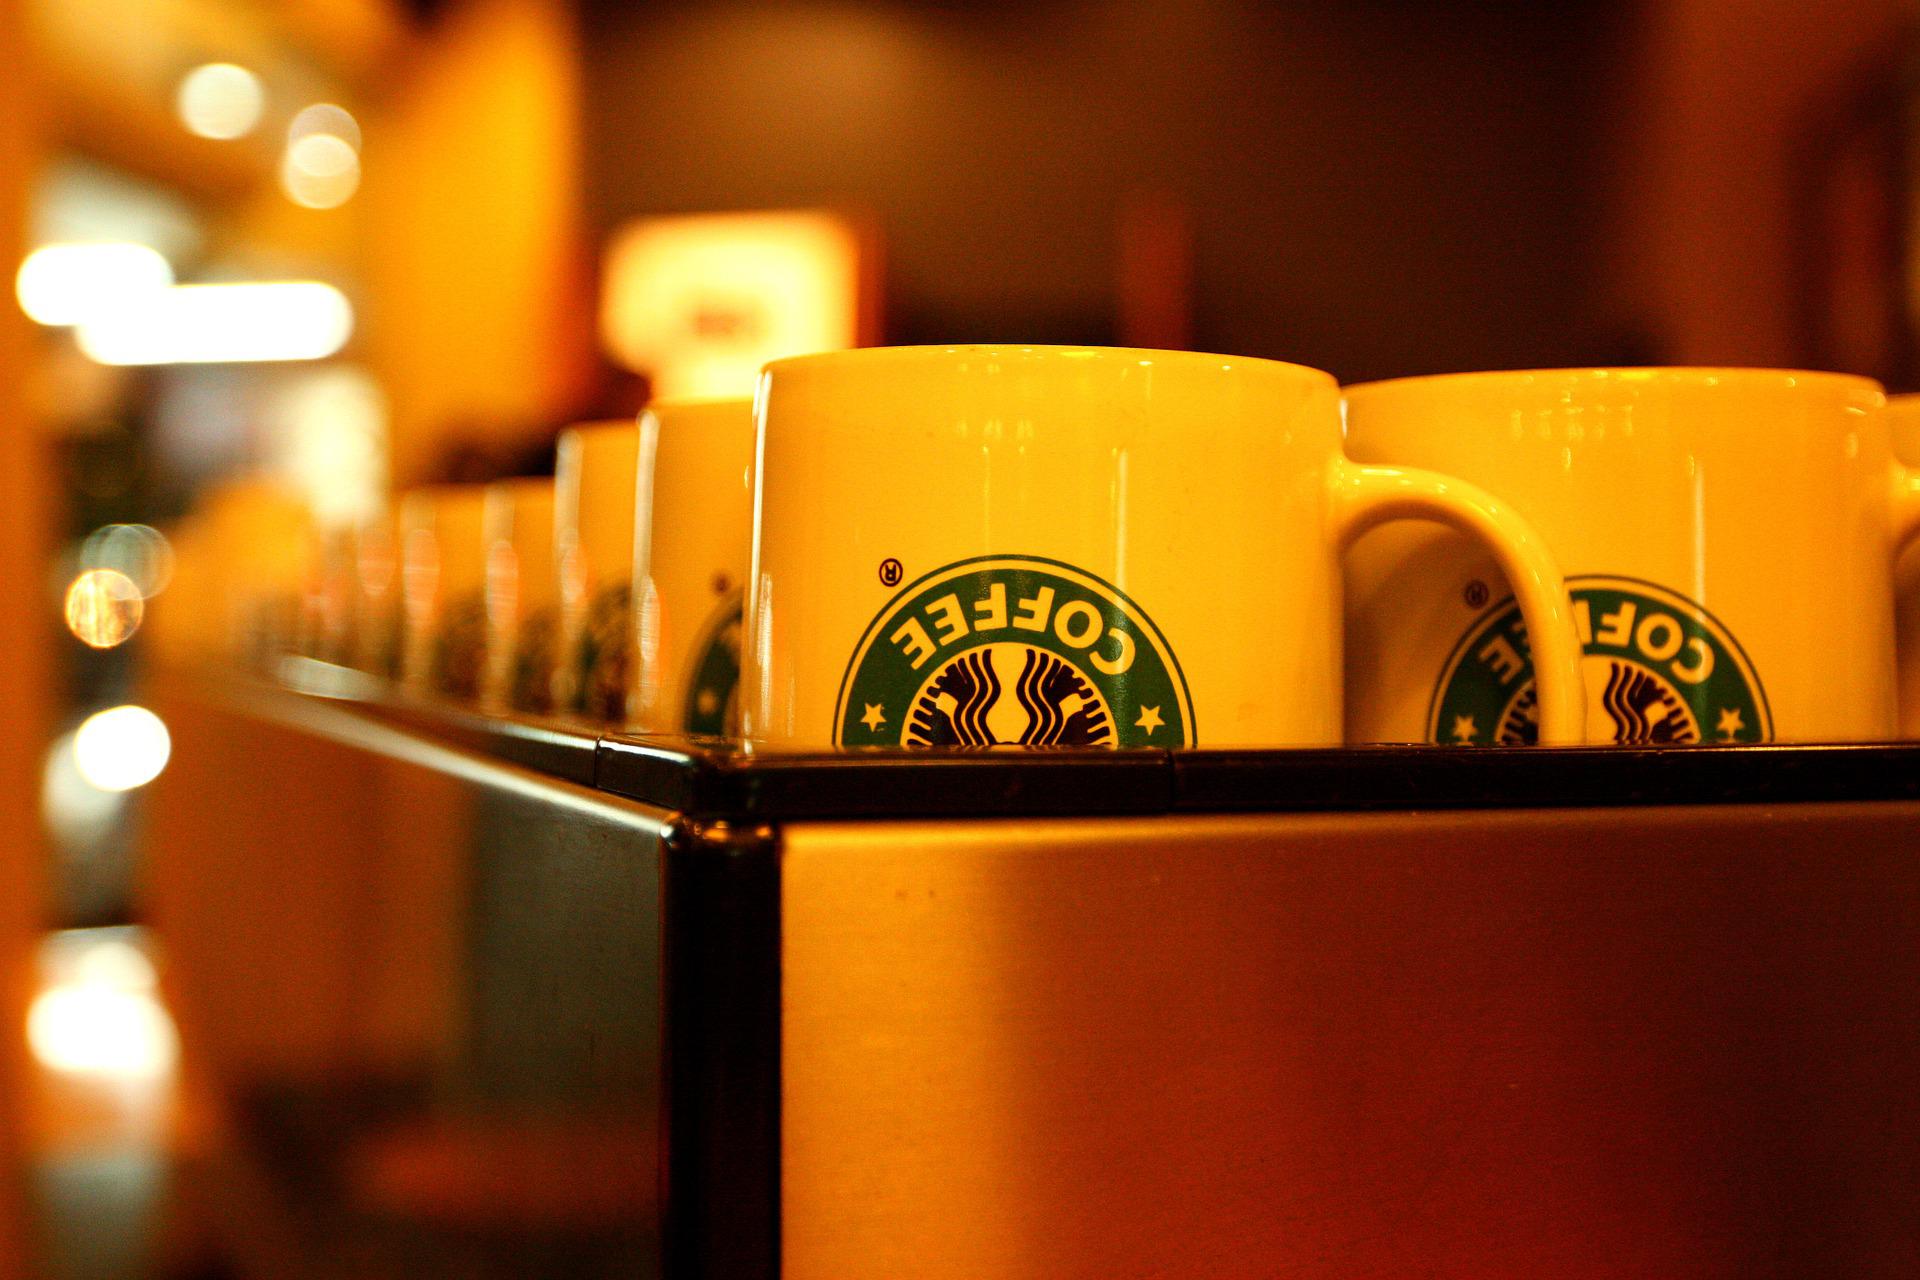 Kedai kopi Starbucks keluar dari Rusia setelah hampir 15 tahun